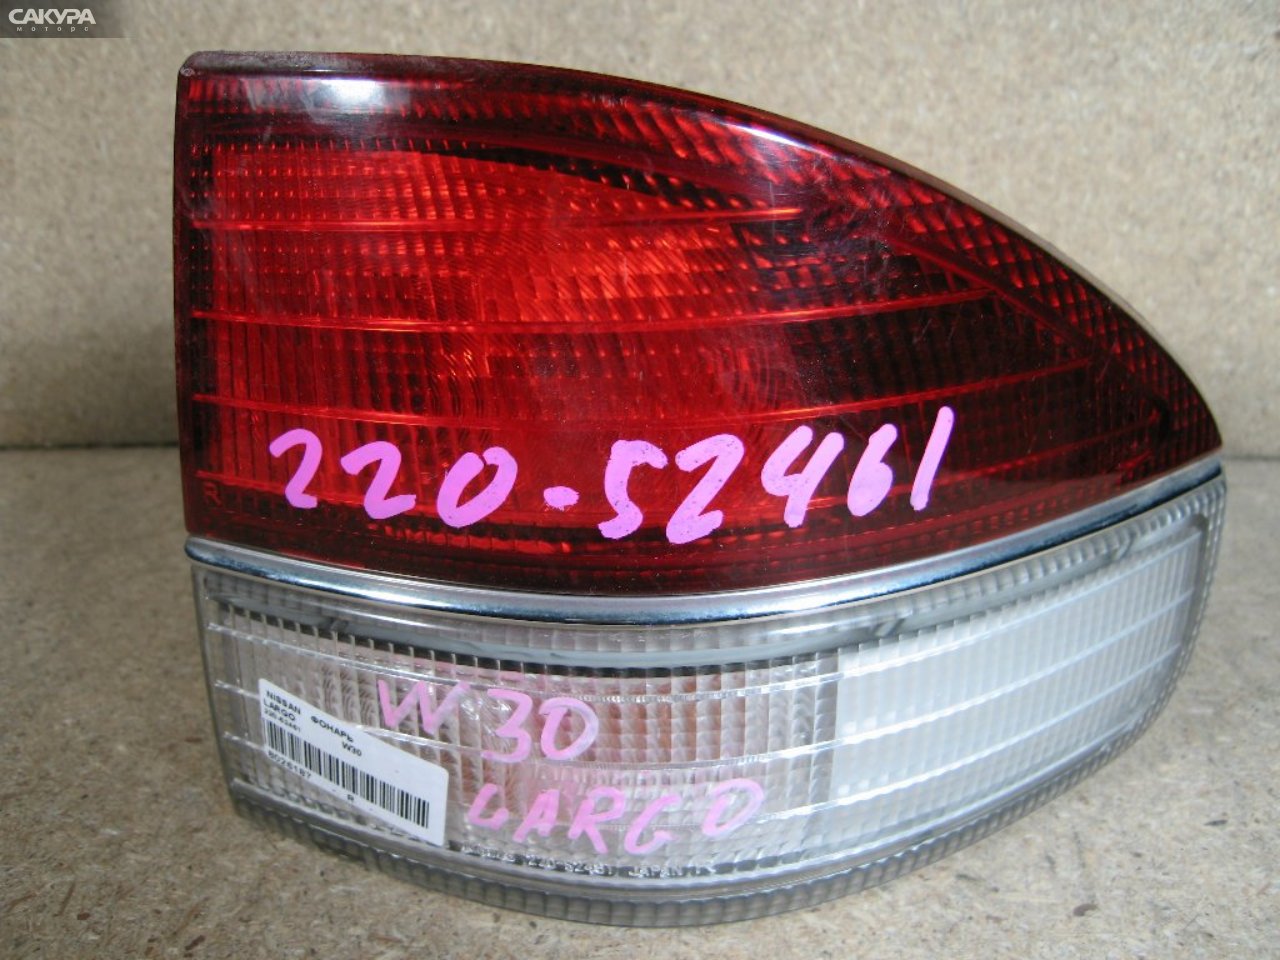 Фонарь стоп-сигнала правый Nissan Largo W30 220-52461: купить в Сакура Абакан.